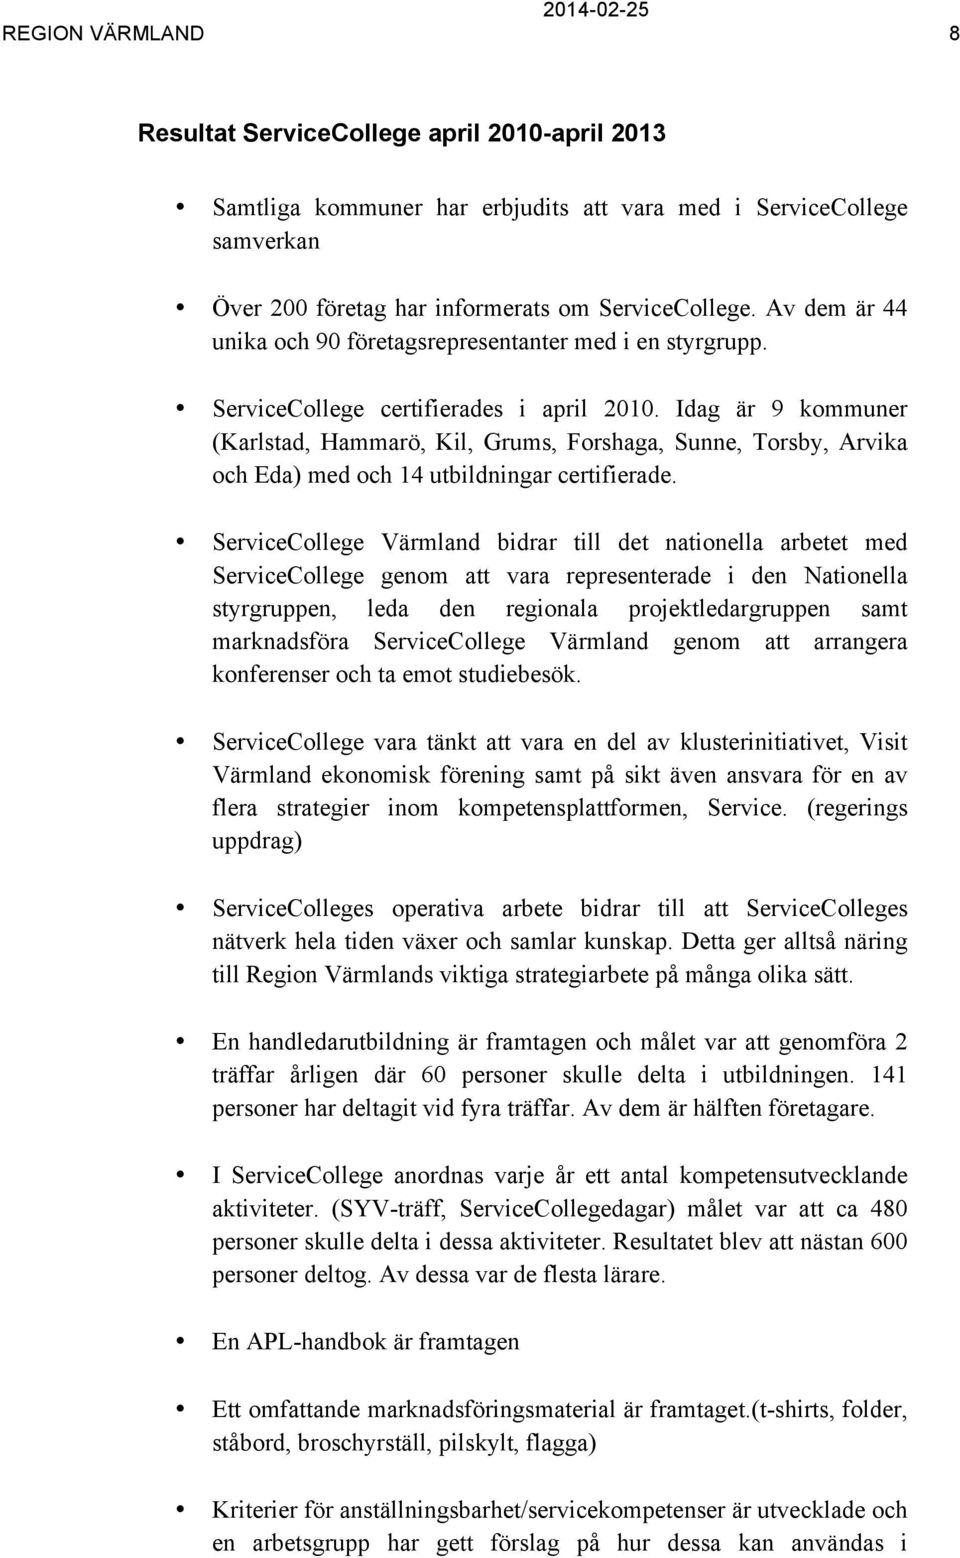 Idag är 9 kommuner (Karlstad, Hammarö, Kil, Grums, Forshaga, Sunne, Torsby, Arvika och Eda) med och 14 utbildningar certifierade.